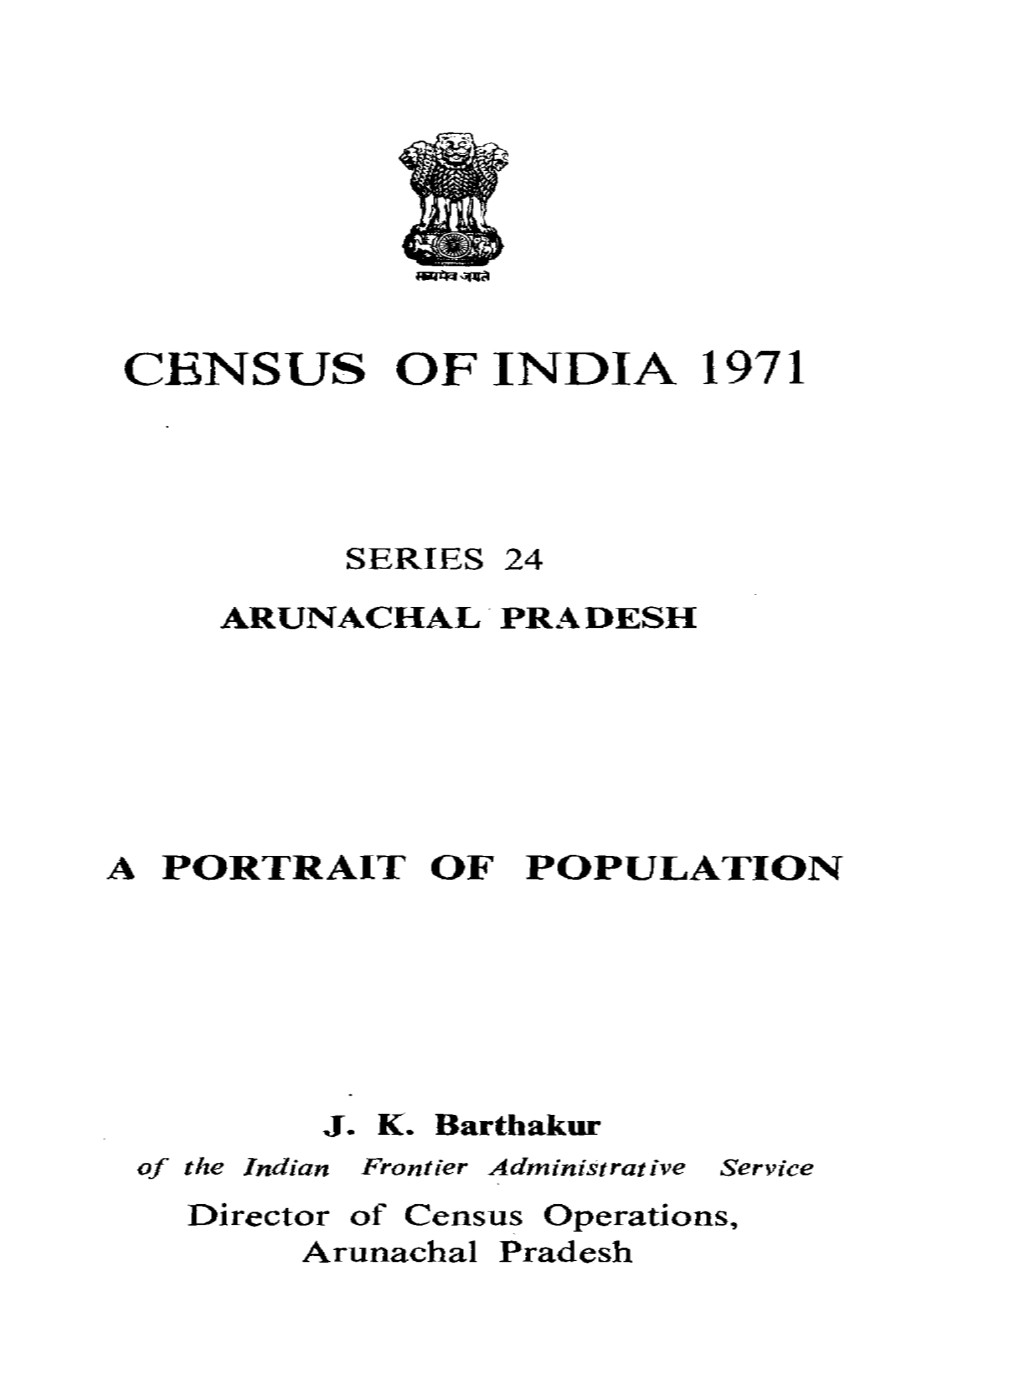 A Portrait of Population ,Series-24, Arunachal Pradesh